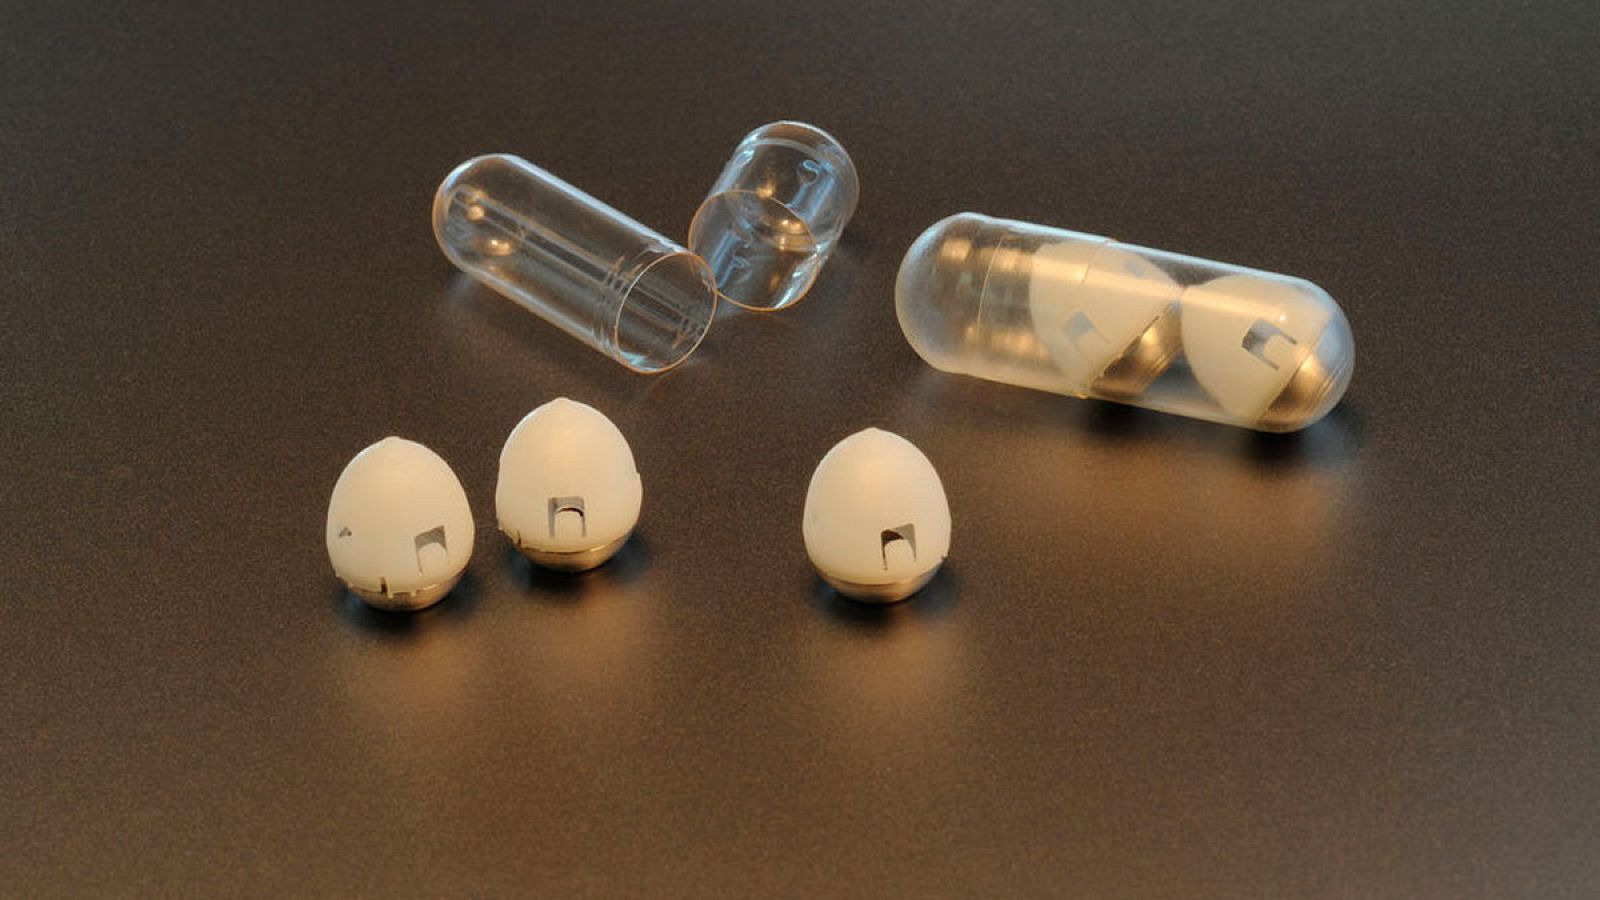 Prototipos de píldora de insulina, compuestos por una cápsula biodegradable del tamaño de un garbanzo.